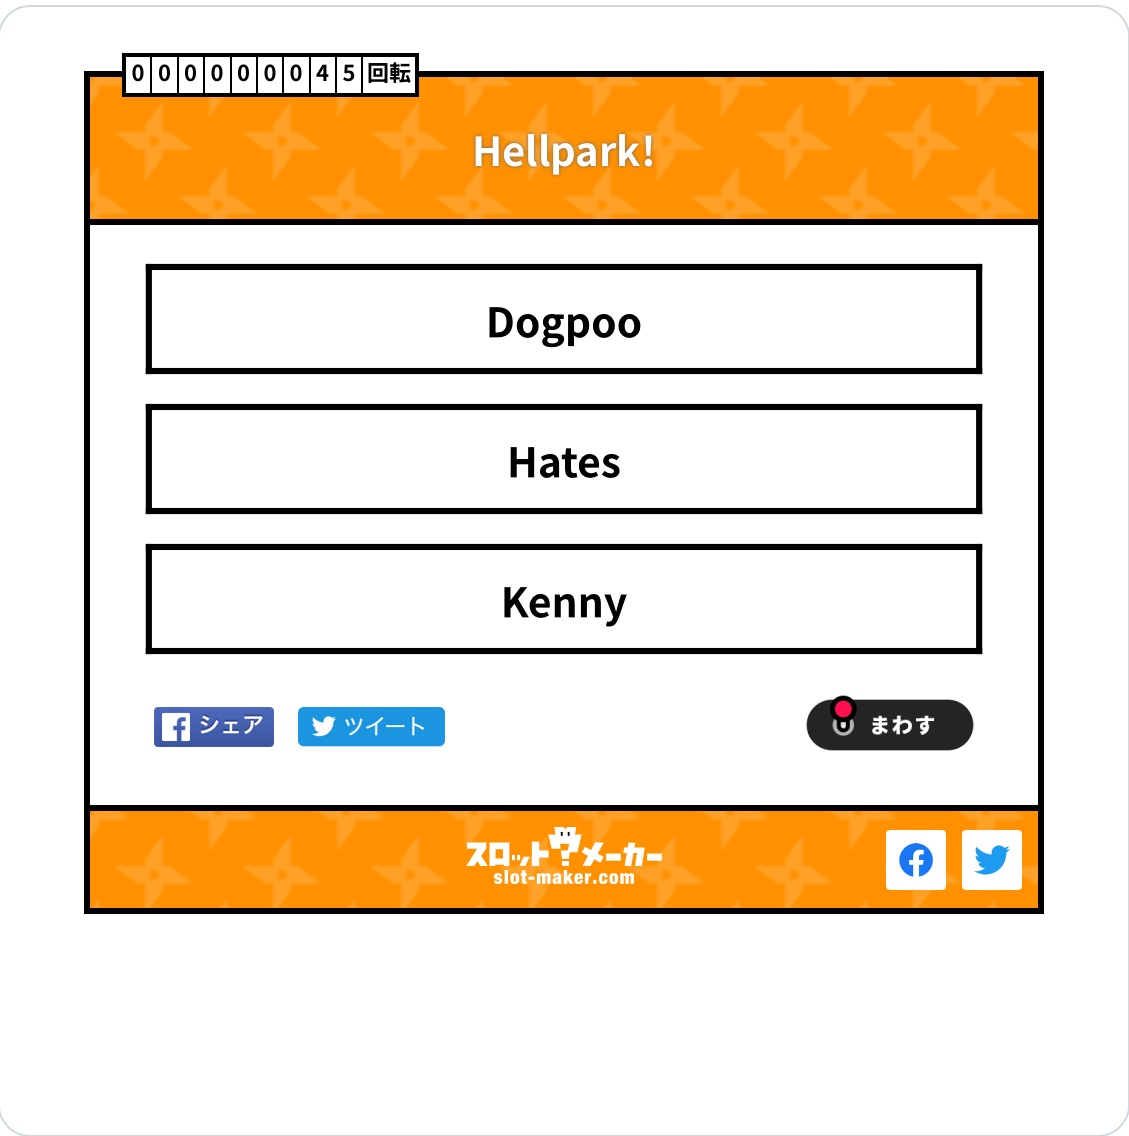 DOGPOO HATES KENNY?!